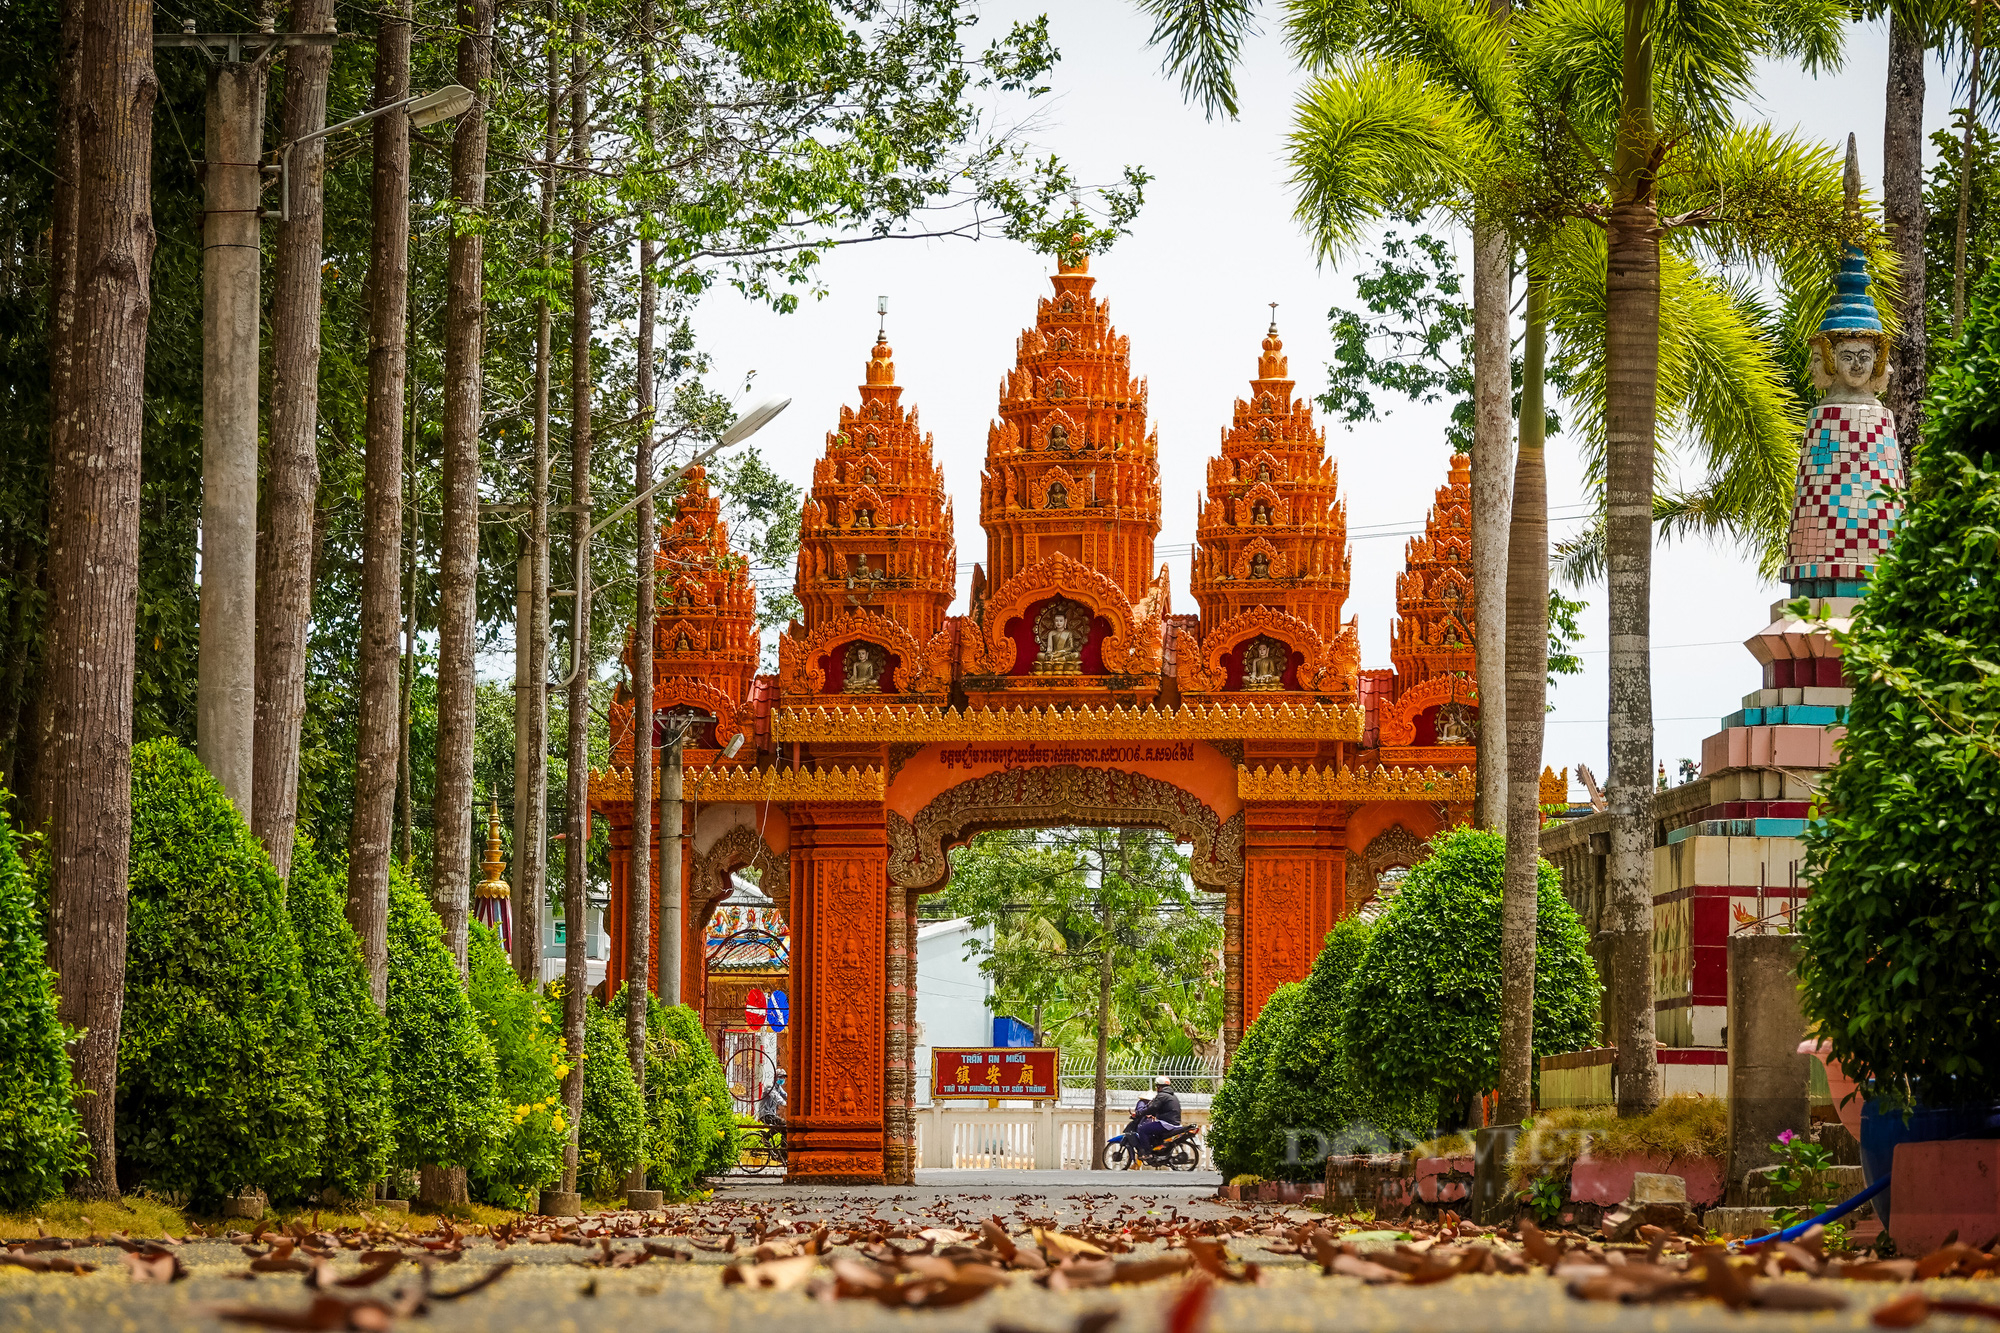 Ngôi chùa Khmer trăm năm tuổi với hàng trăm cây sao cổ thụ “độc” nhất Sóc Trăng - Ảnh 2.